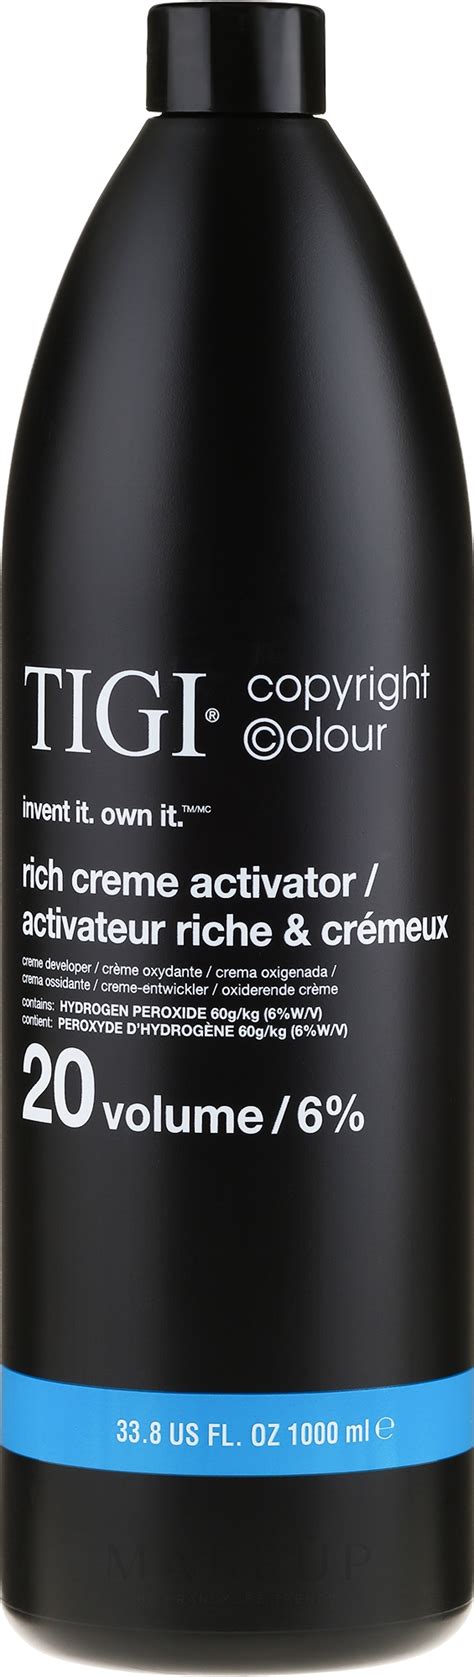 Tigi Colour Activator Vol Activator Makeup